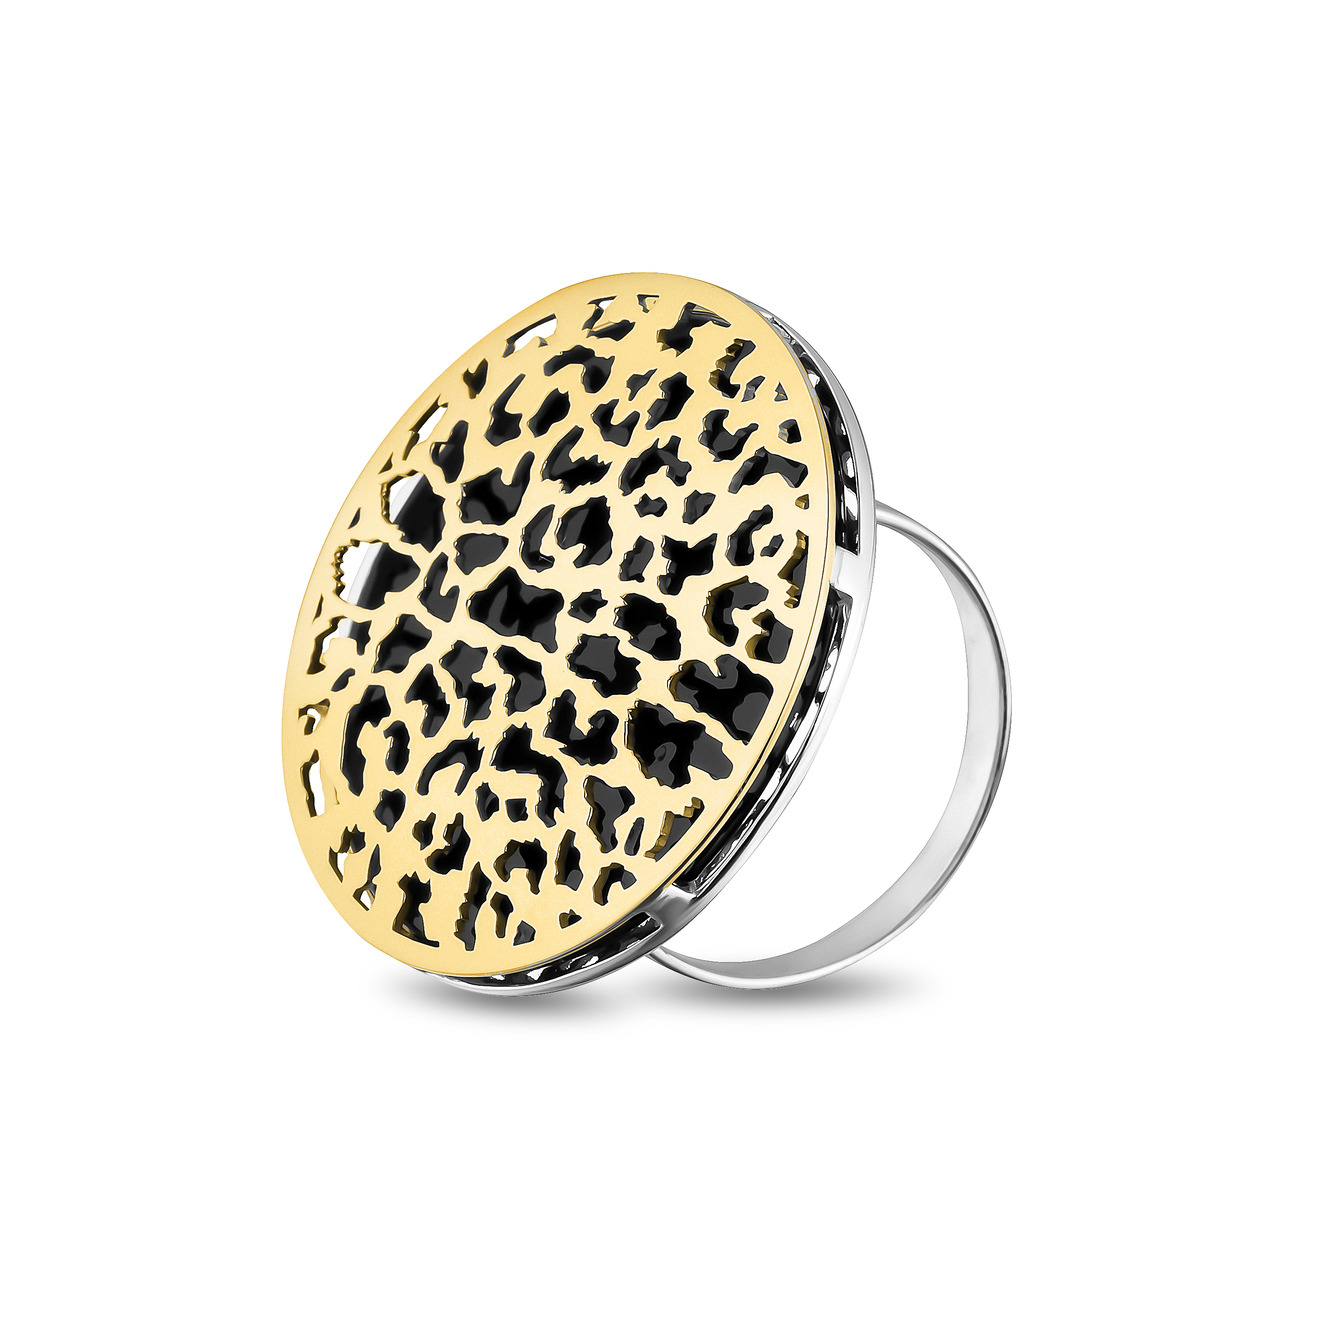 LUTA Jewelry Большое позолоченное кольцо из серебра c леопардовым узором luta jewelry большое позолоченное колье из серебра c леопардовым узором